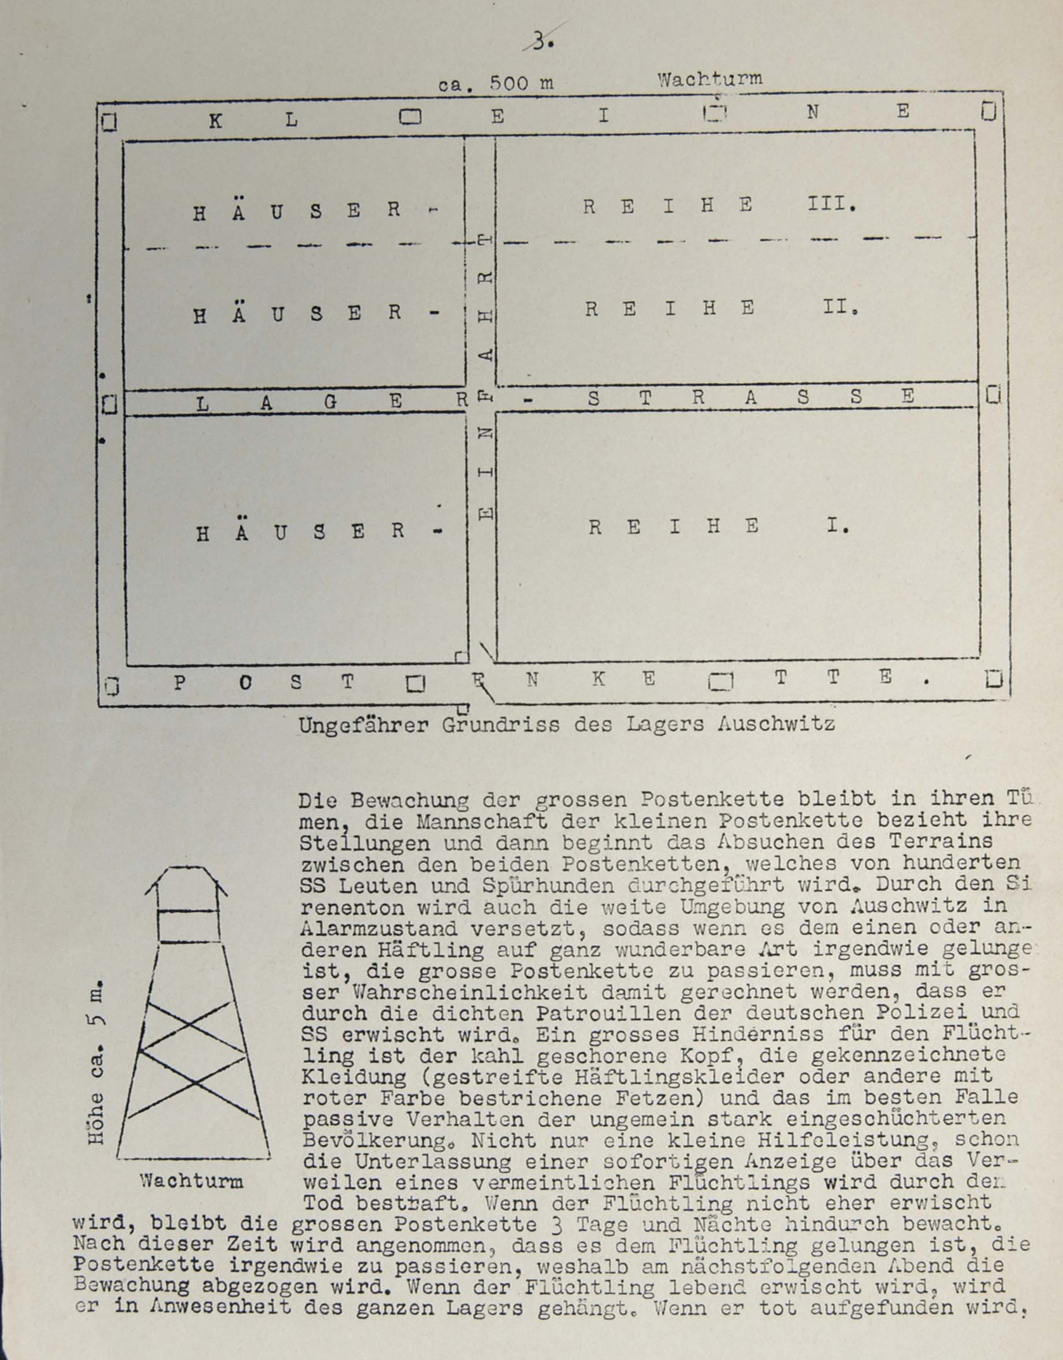 Allgemeine Skizze des Hauptlagers und einer der das Lager umgebenden Wachtürme, aus dem Vrba-Wetzler-Bericht